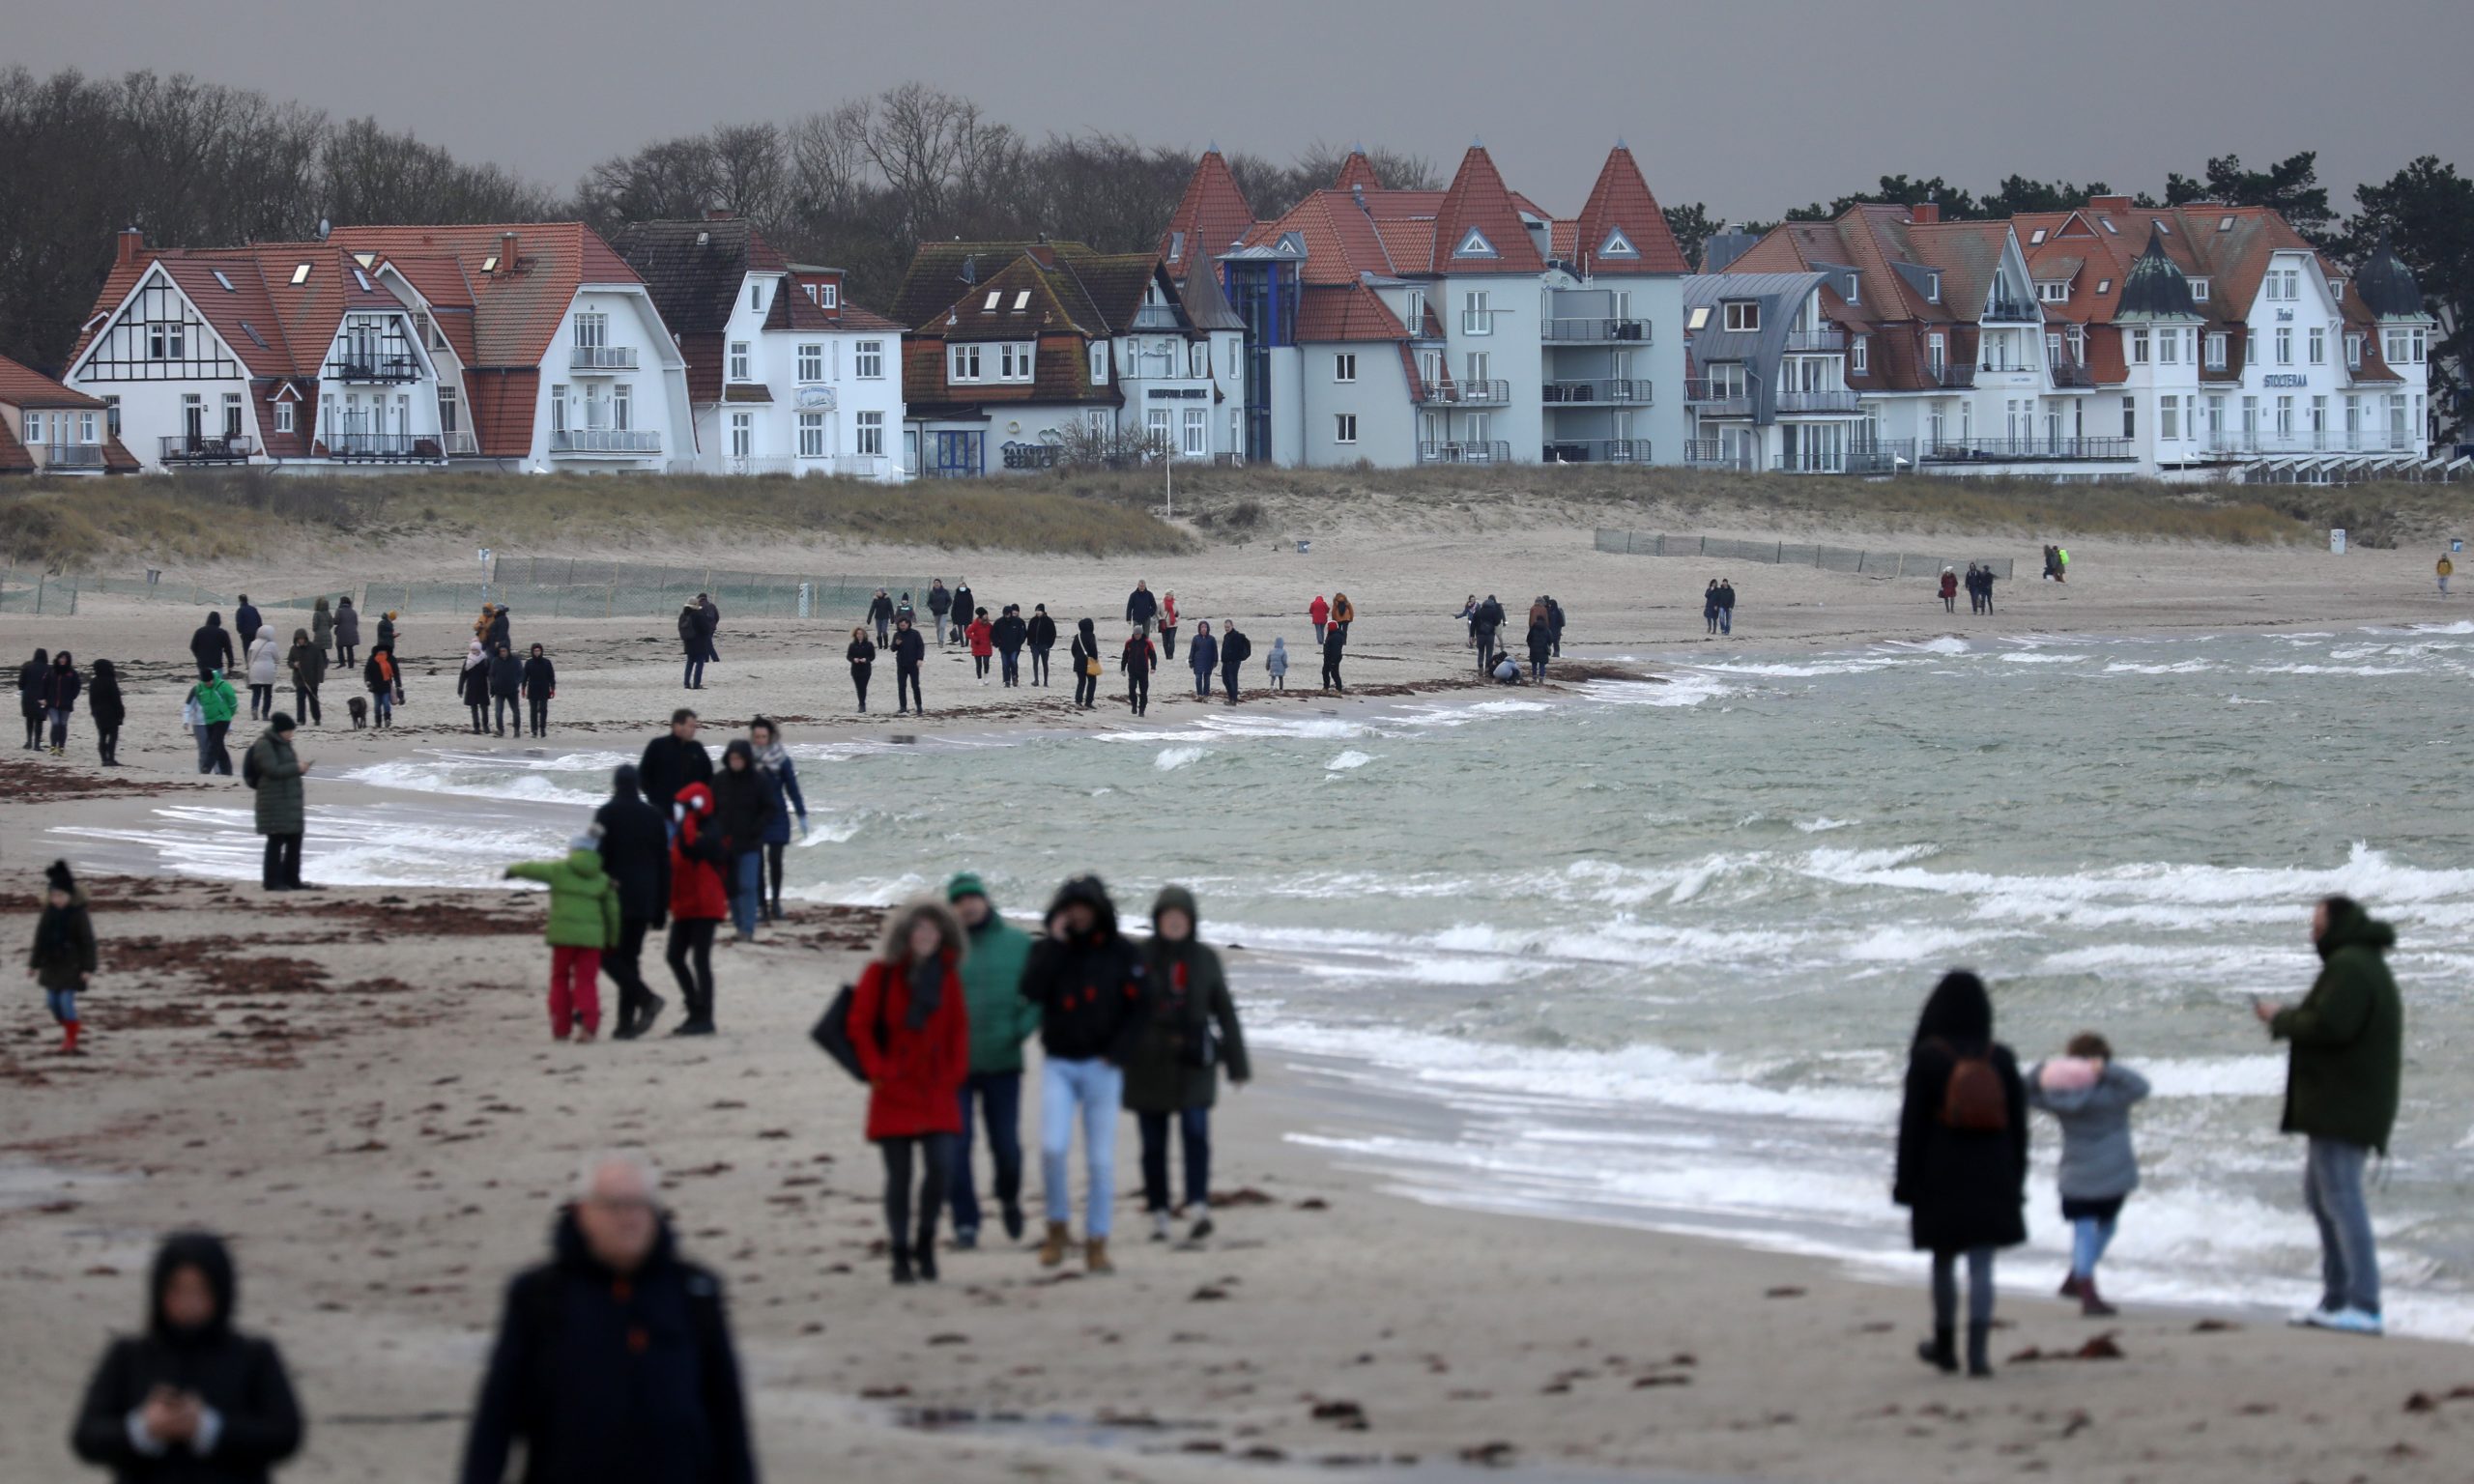 Spaziergänger sind am Strand von Warnemünde unterwegs.